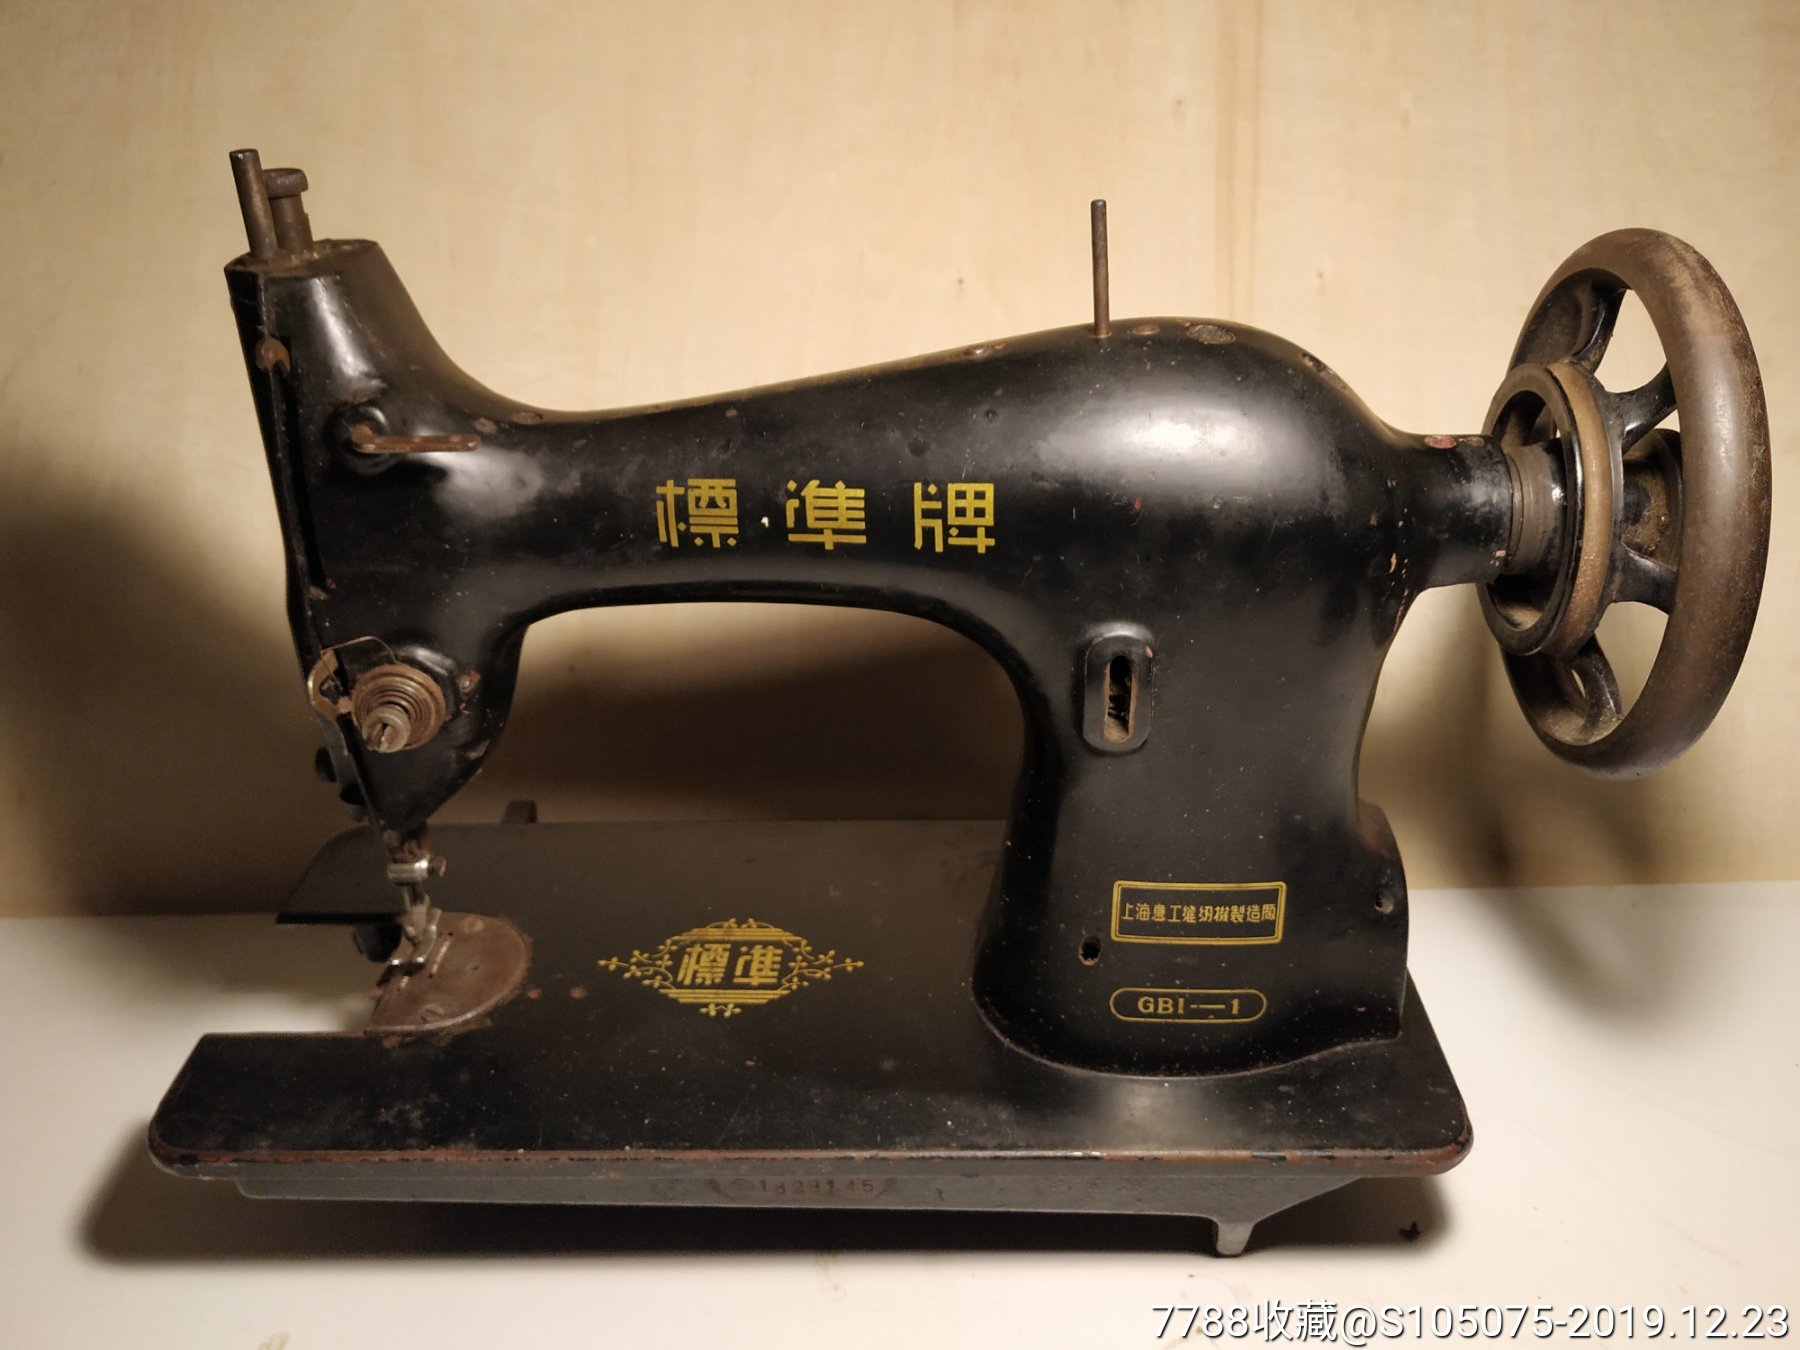 缝纫机,上海惠工标准牌gb1——1厚料缝纫机头